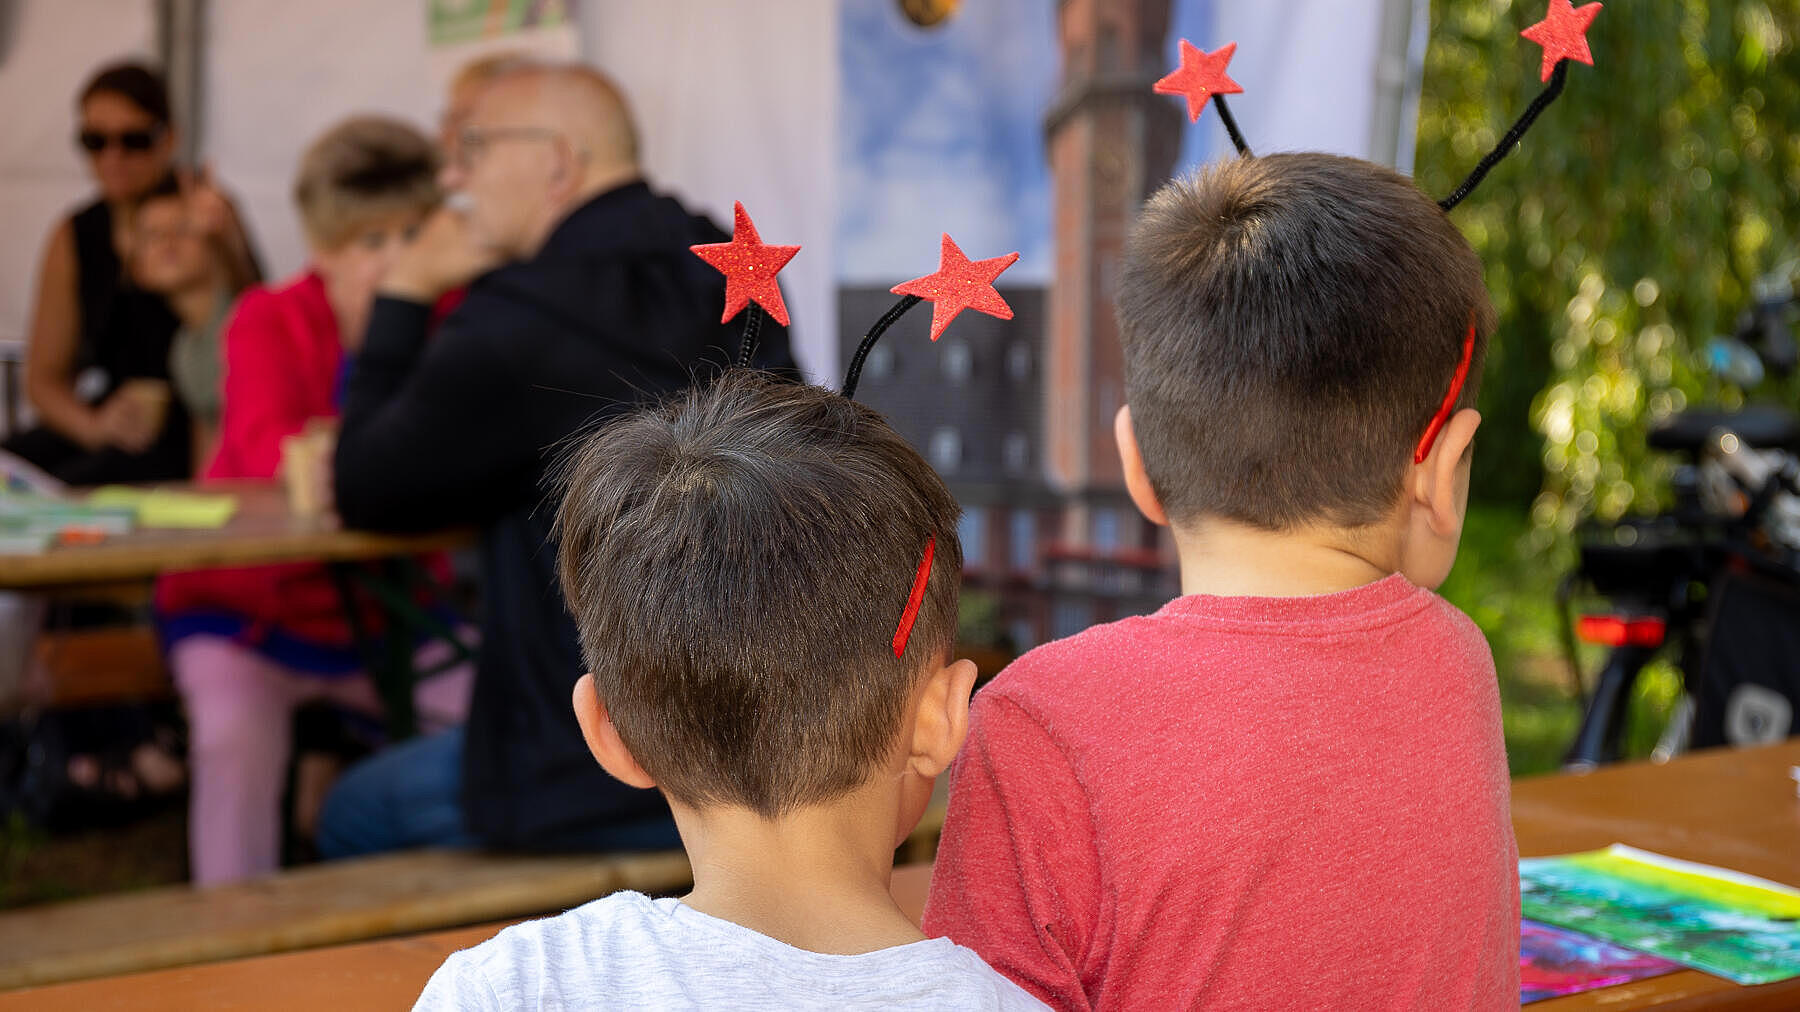 Außenaufnahme zeigt zwei Kinder mit dem Rücken zur Kamera. Beide tragen einen Kopfschmuck aus Sternen an Fühlern.